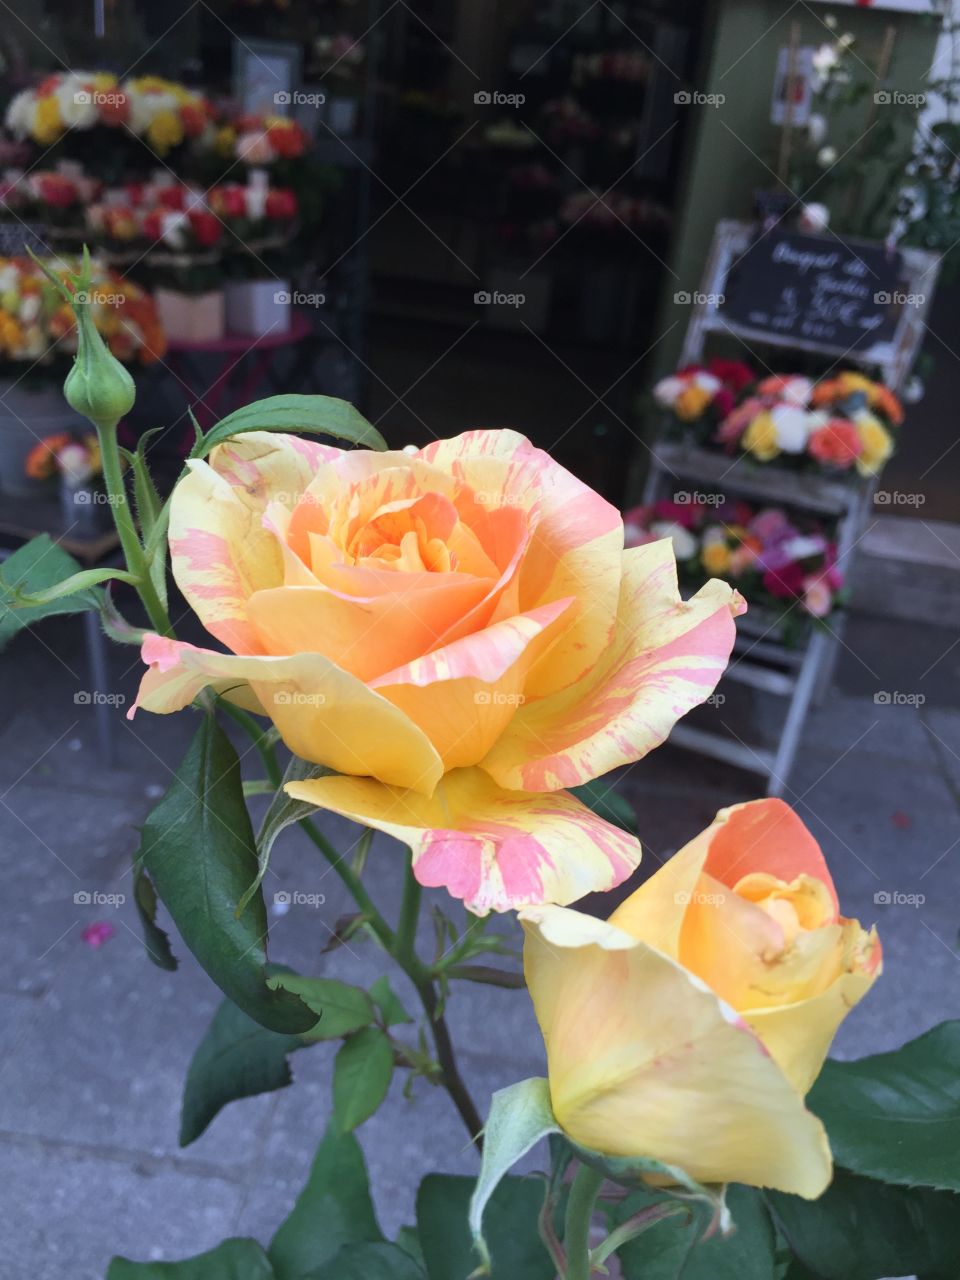 Roses in Paris